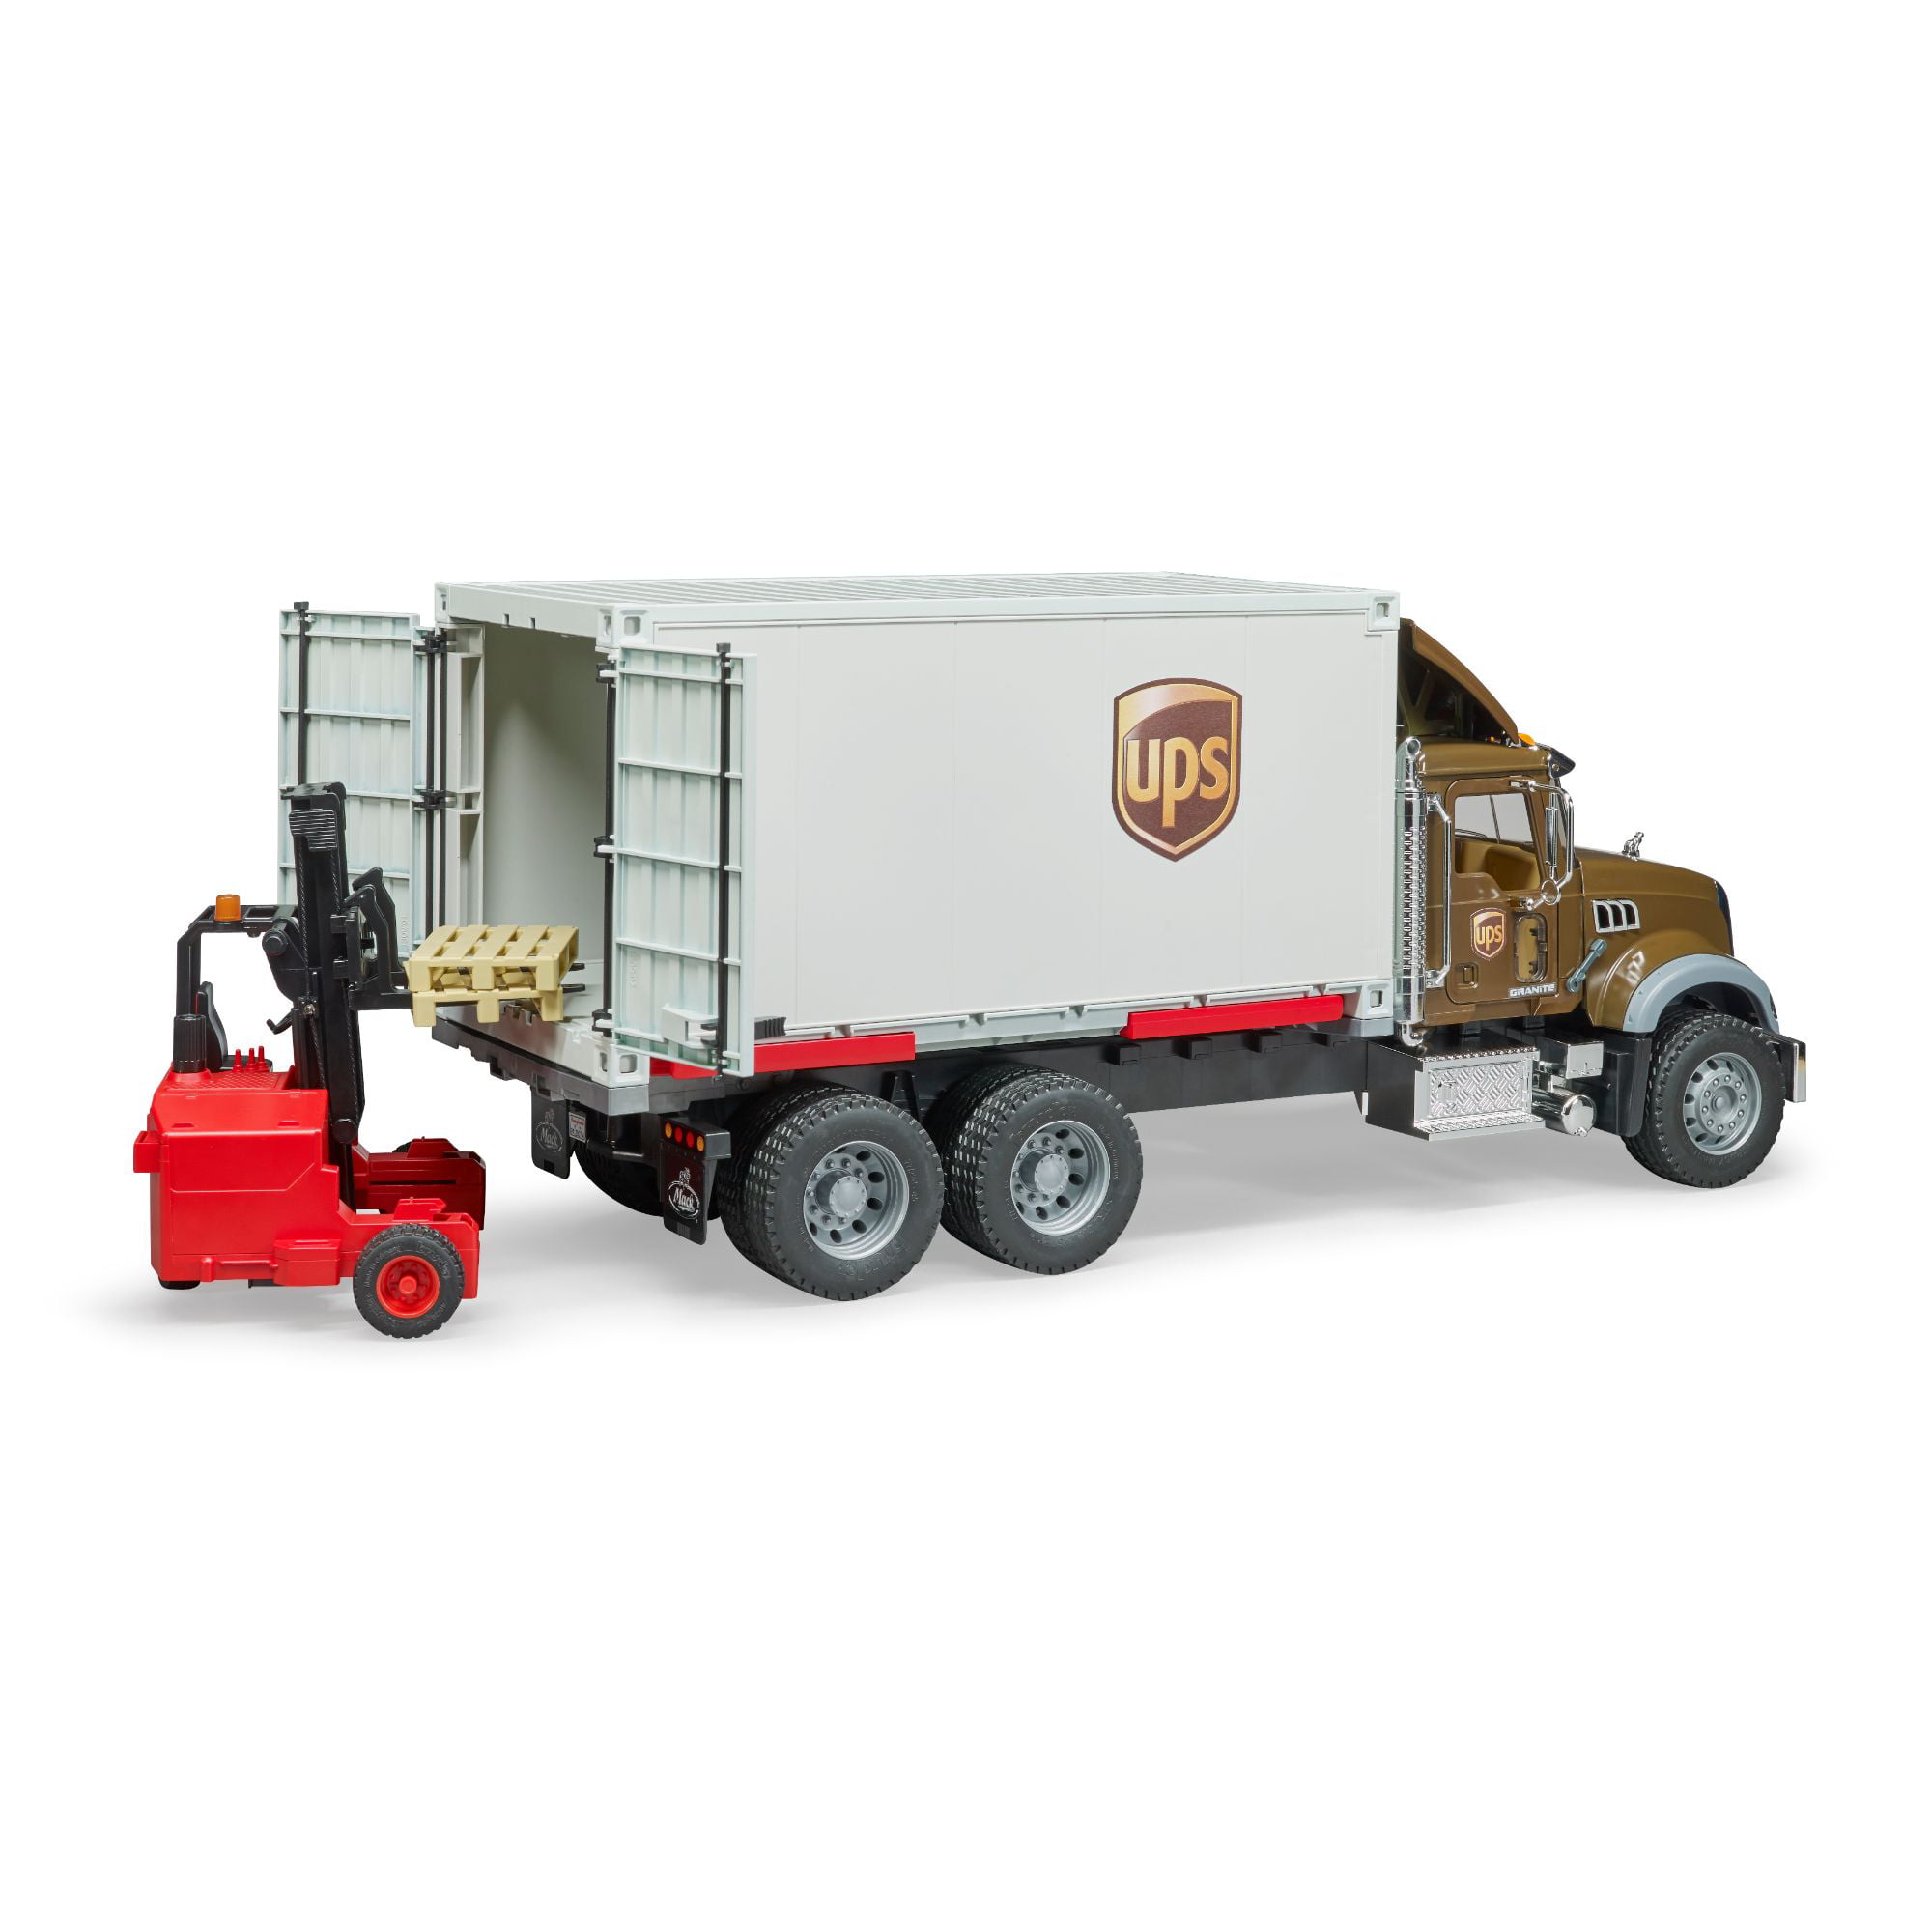 Details about   Bruder Mack Granite Ups Logistics Truck & Forklift Kids Childrens Toy Scale 1:16 